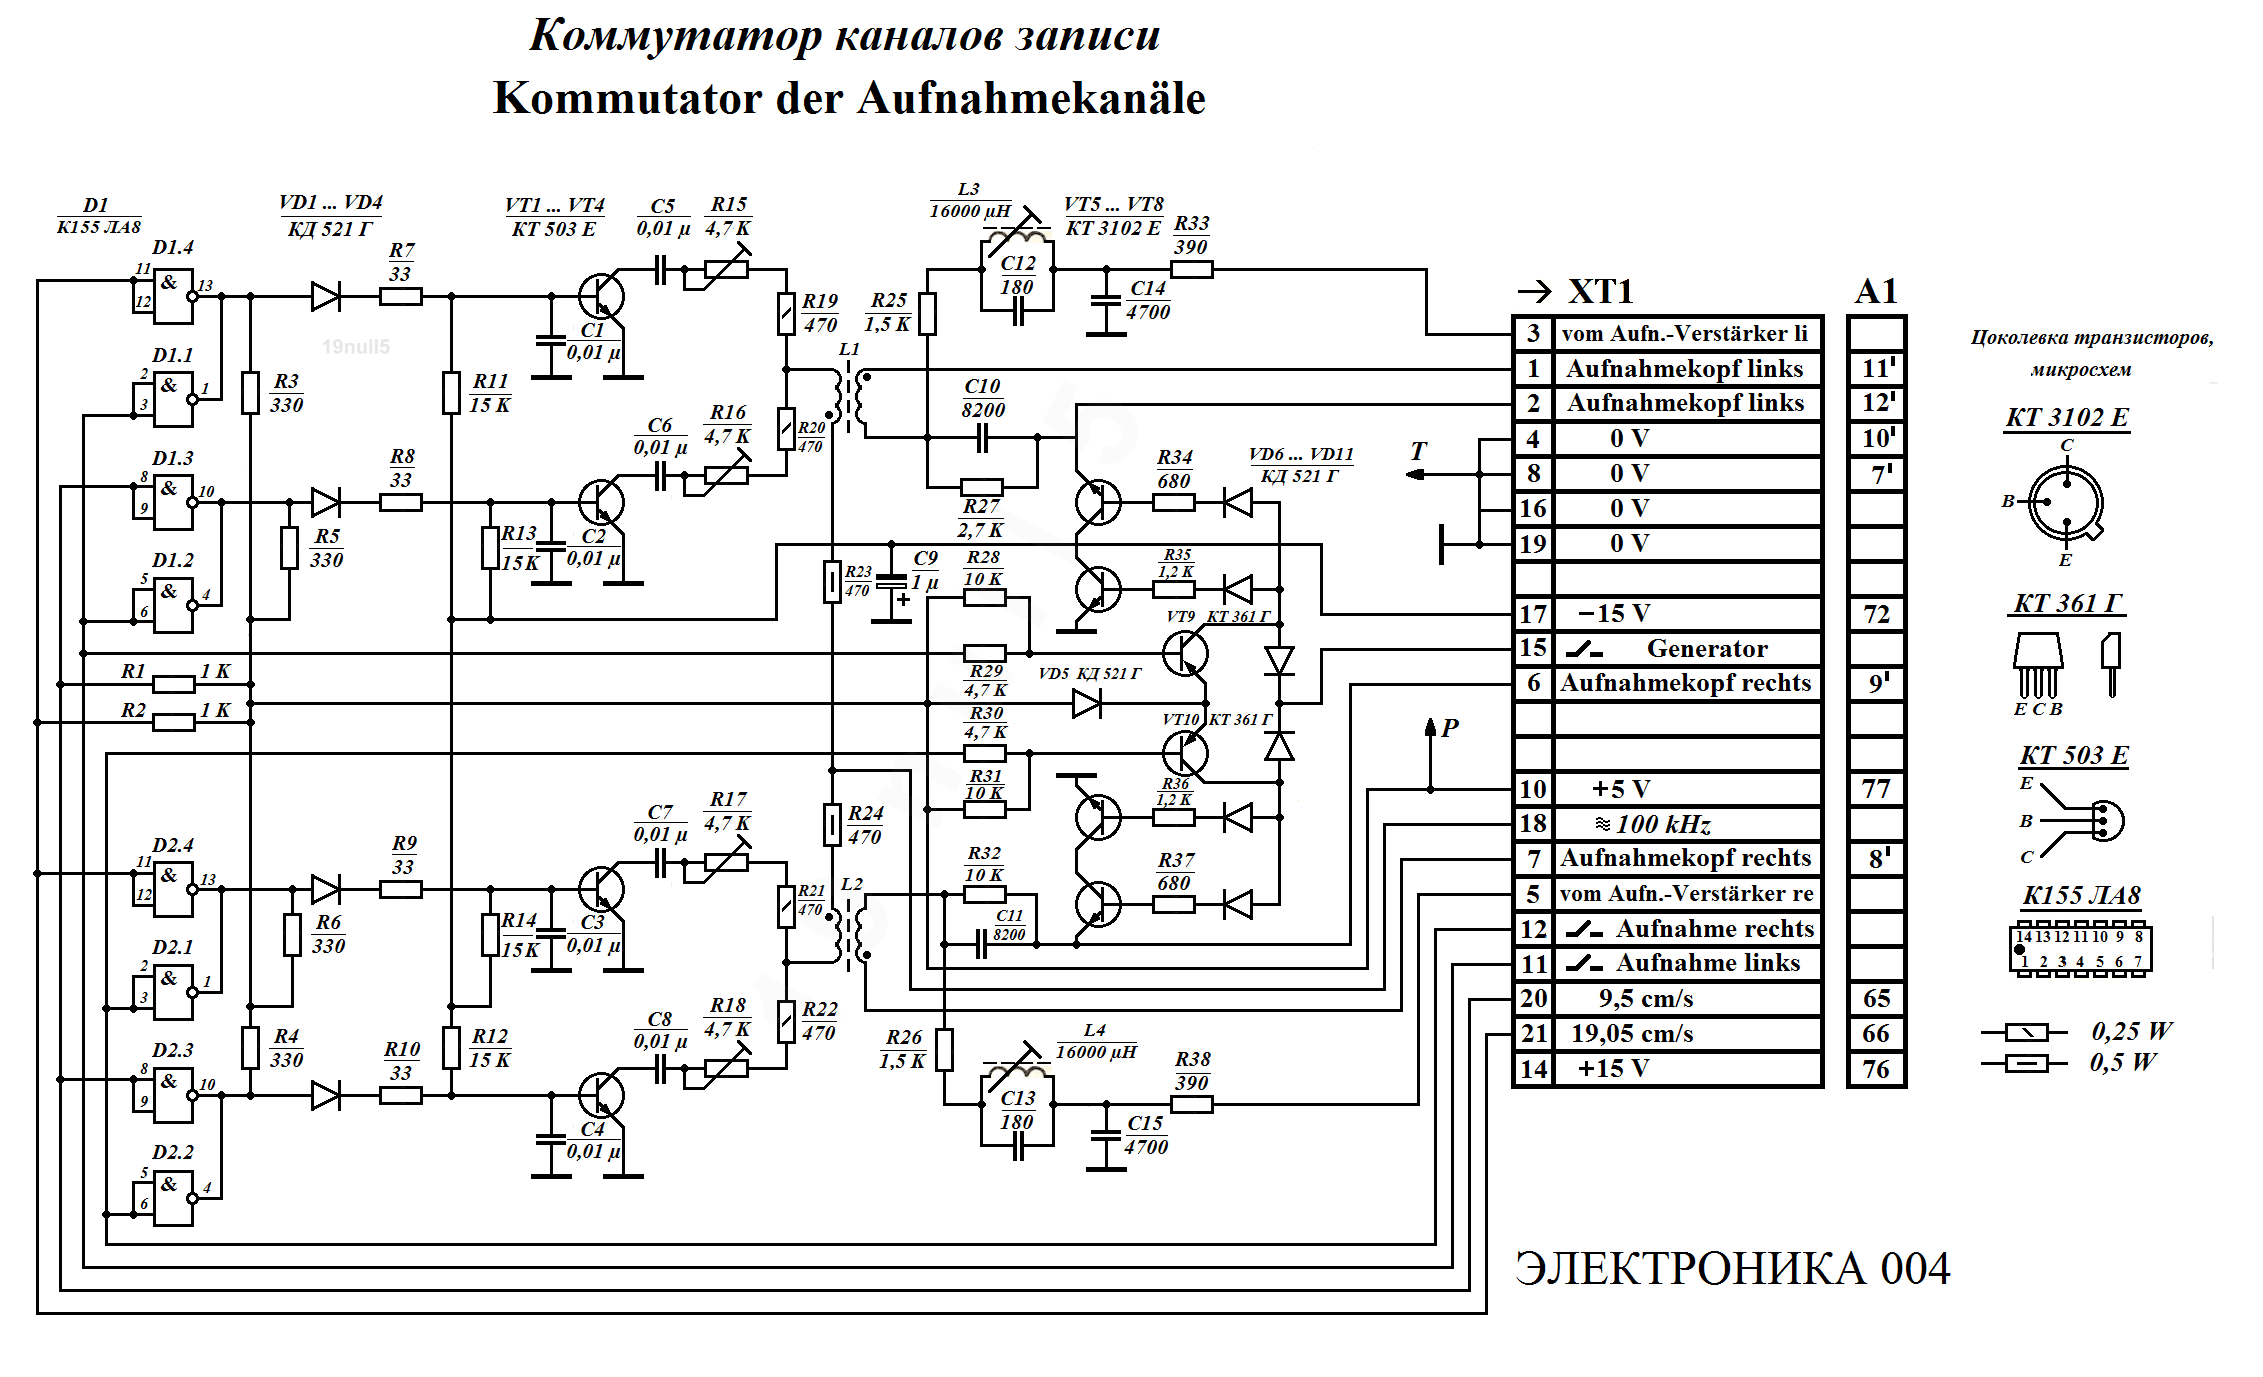 Электроника 004 (110) Kommutator